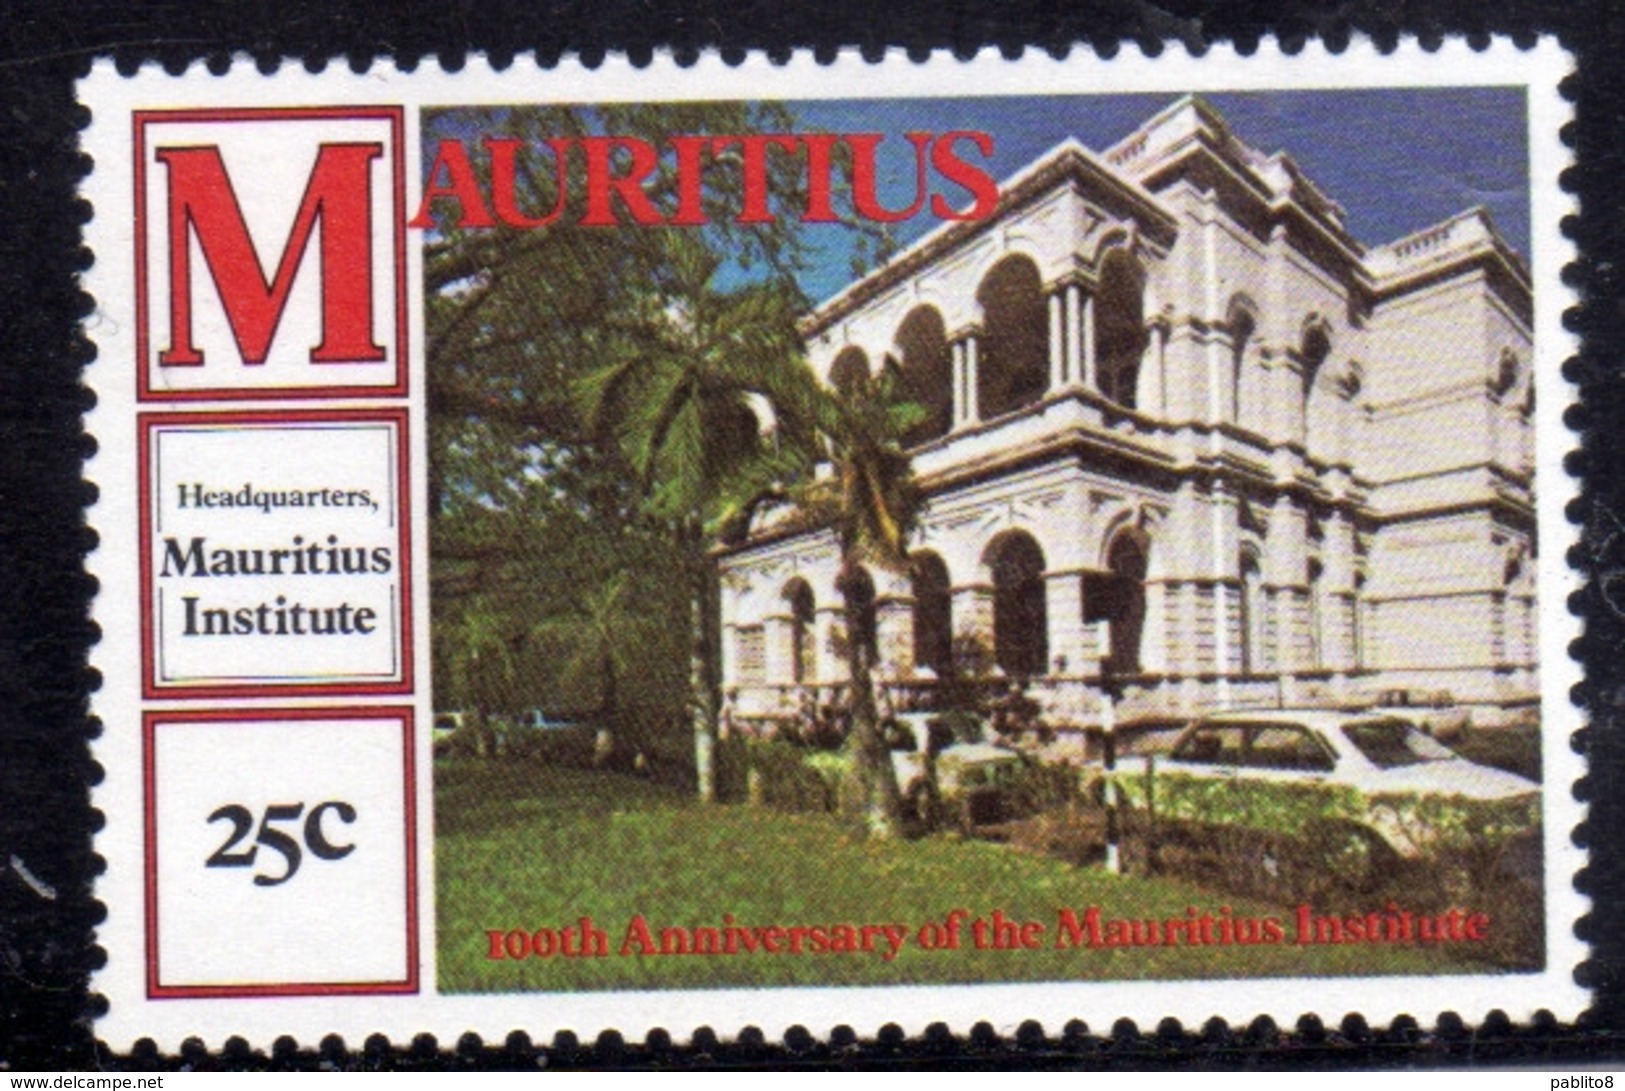 MAURITIUS 1980 HEADQUARTERS INSTITUTE CENTENARY 25c MNH - Mauritius (1968-...)